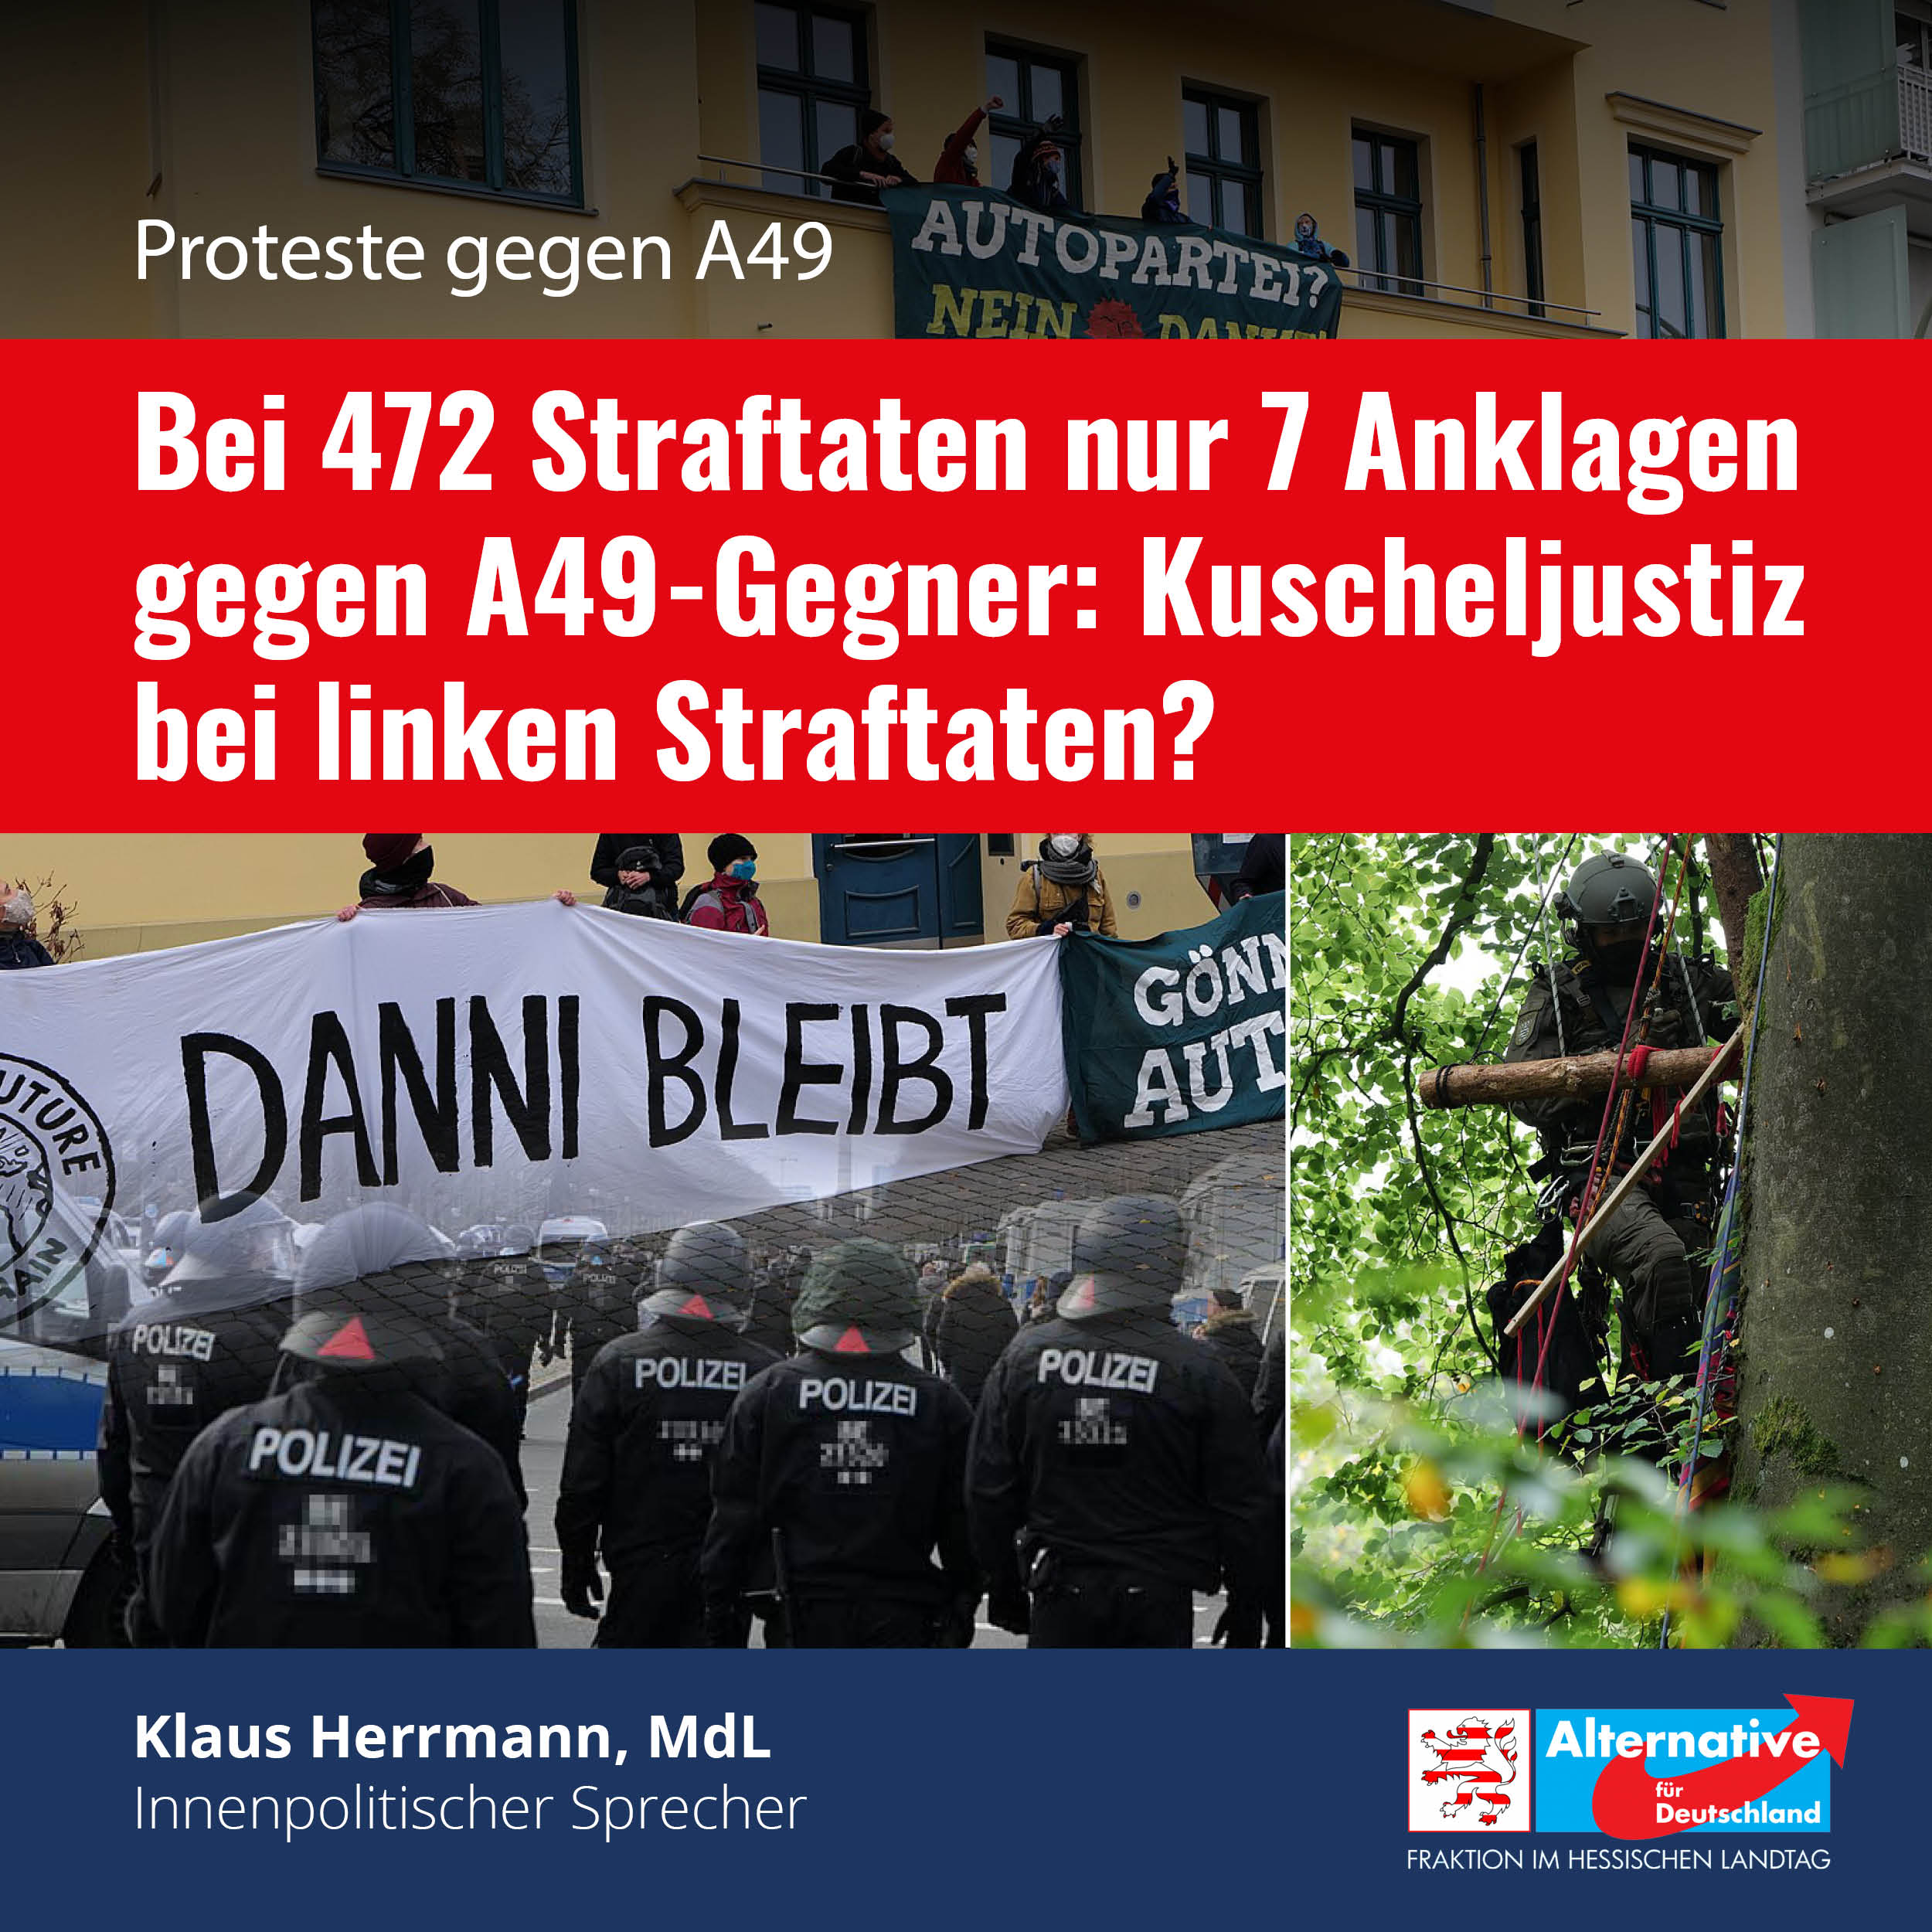 You are currently viewing Nur 7 Anklagen gegen A49-Gegner: „Kuscheljustiz?“